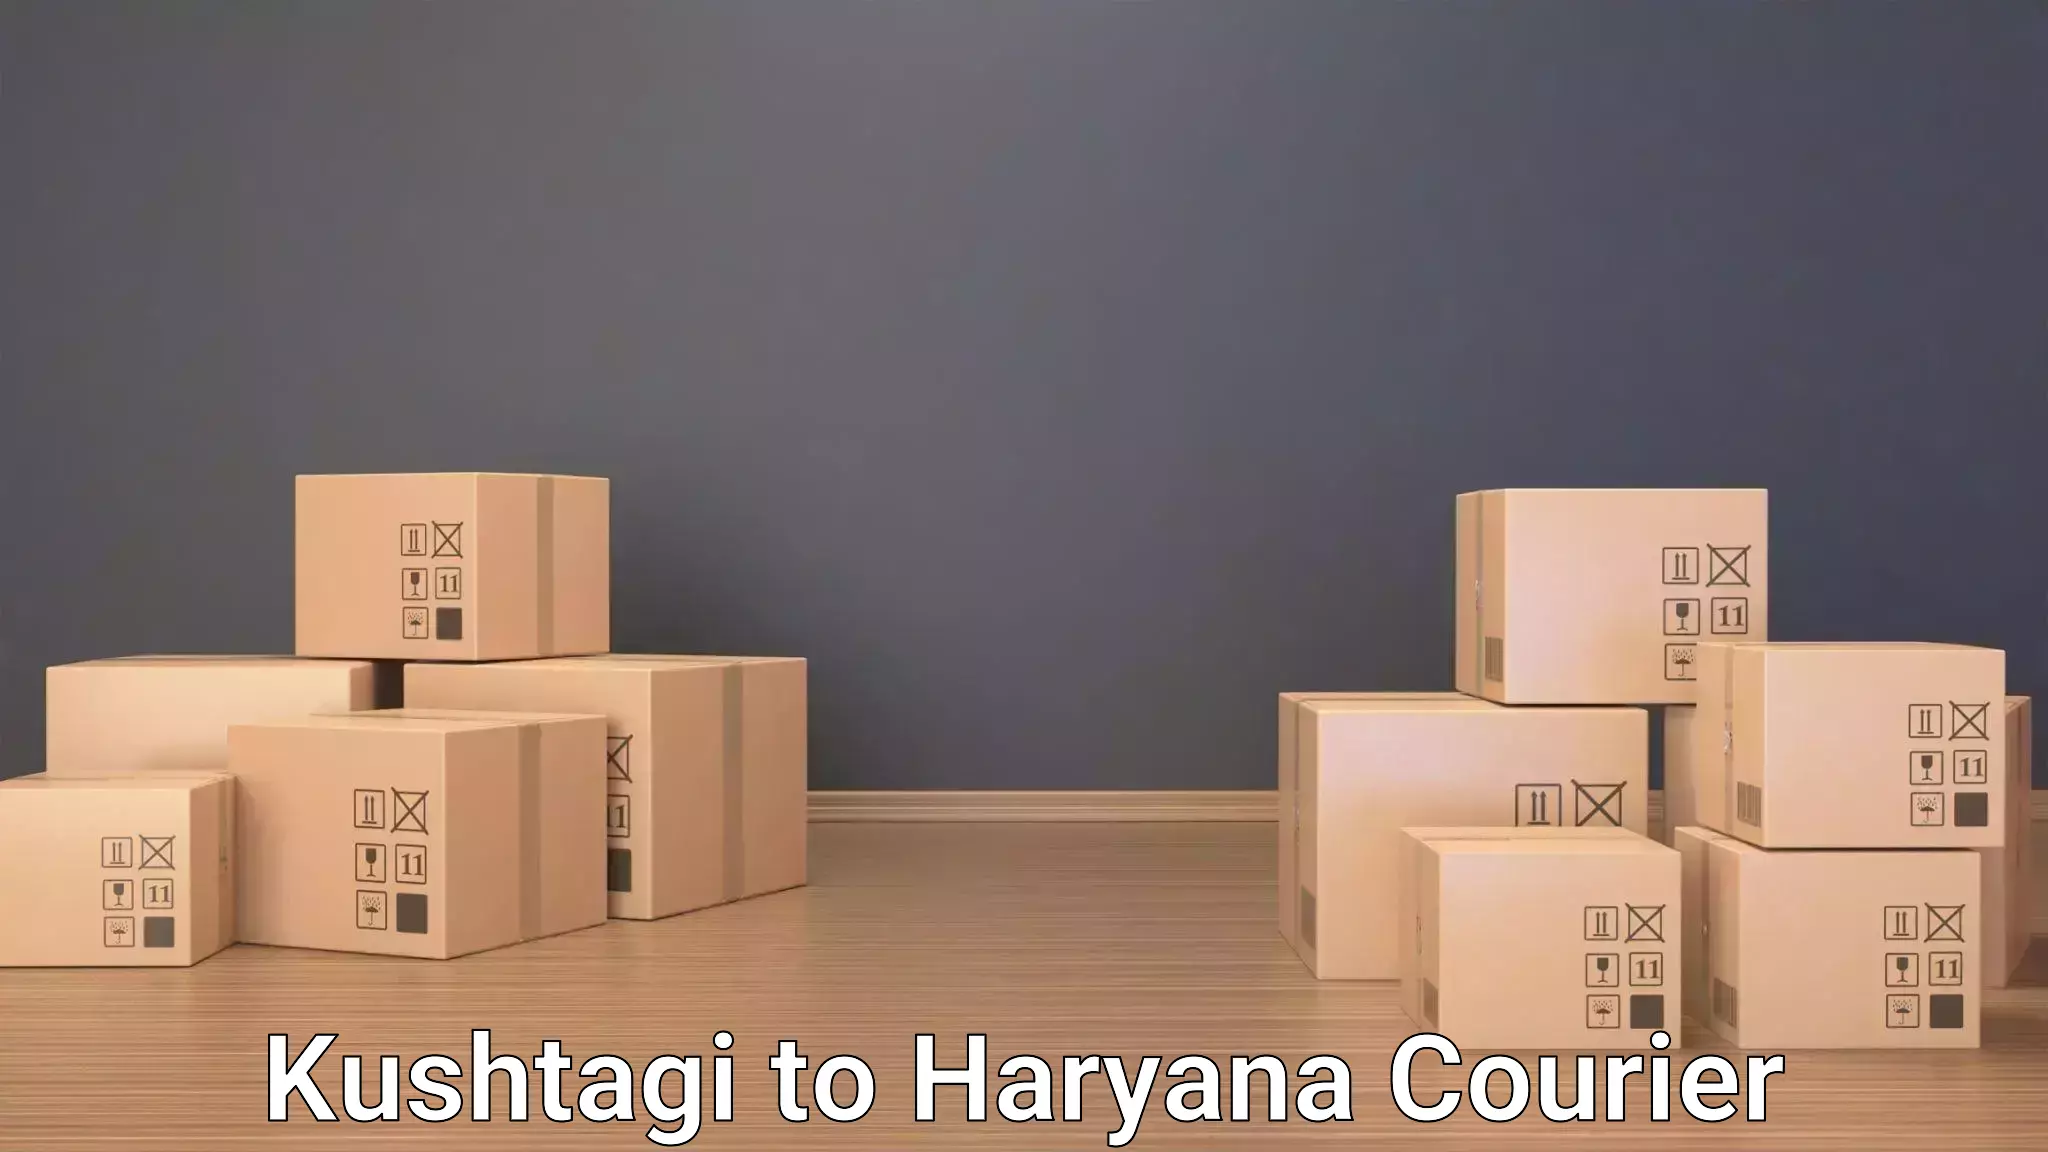 Luggage shipping service Kushtagi to IIIT Sonepat